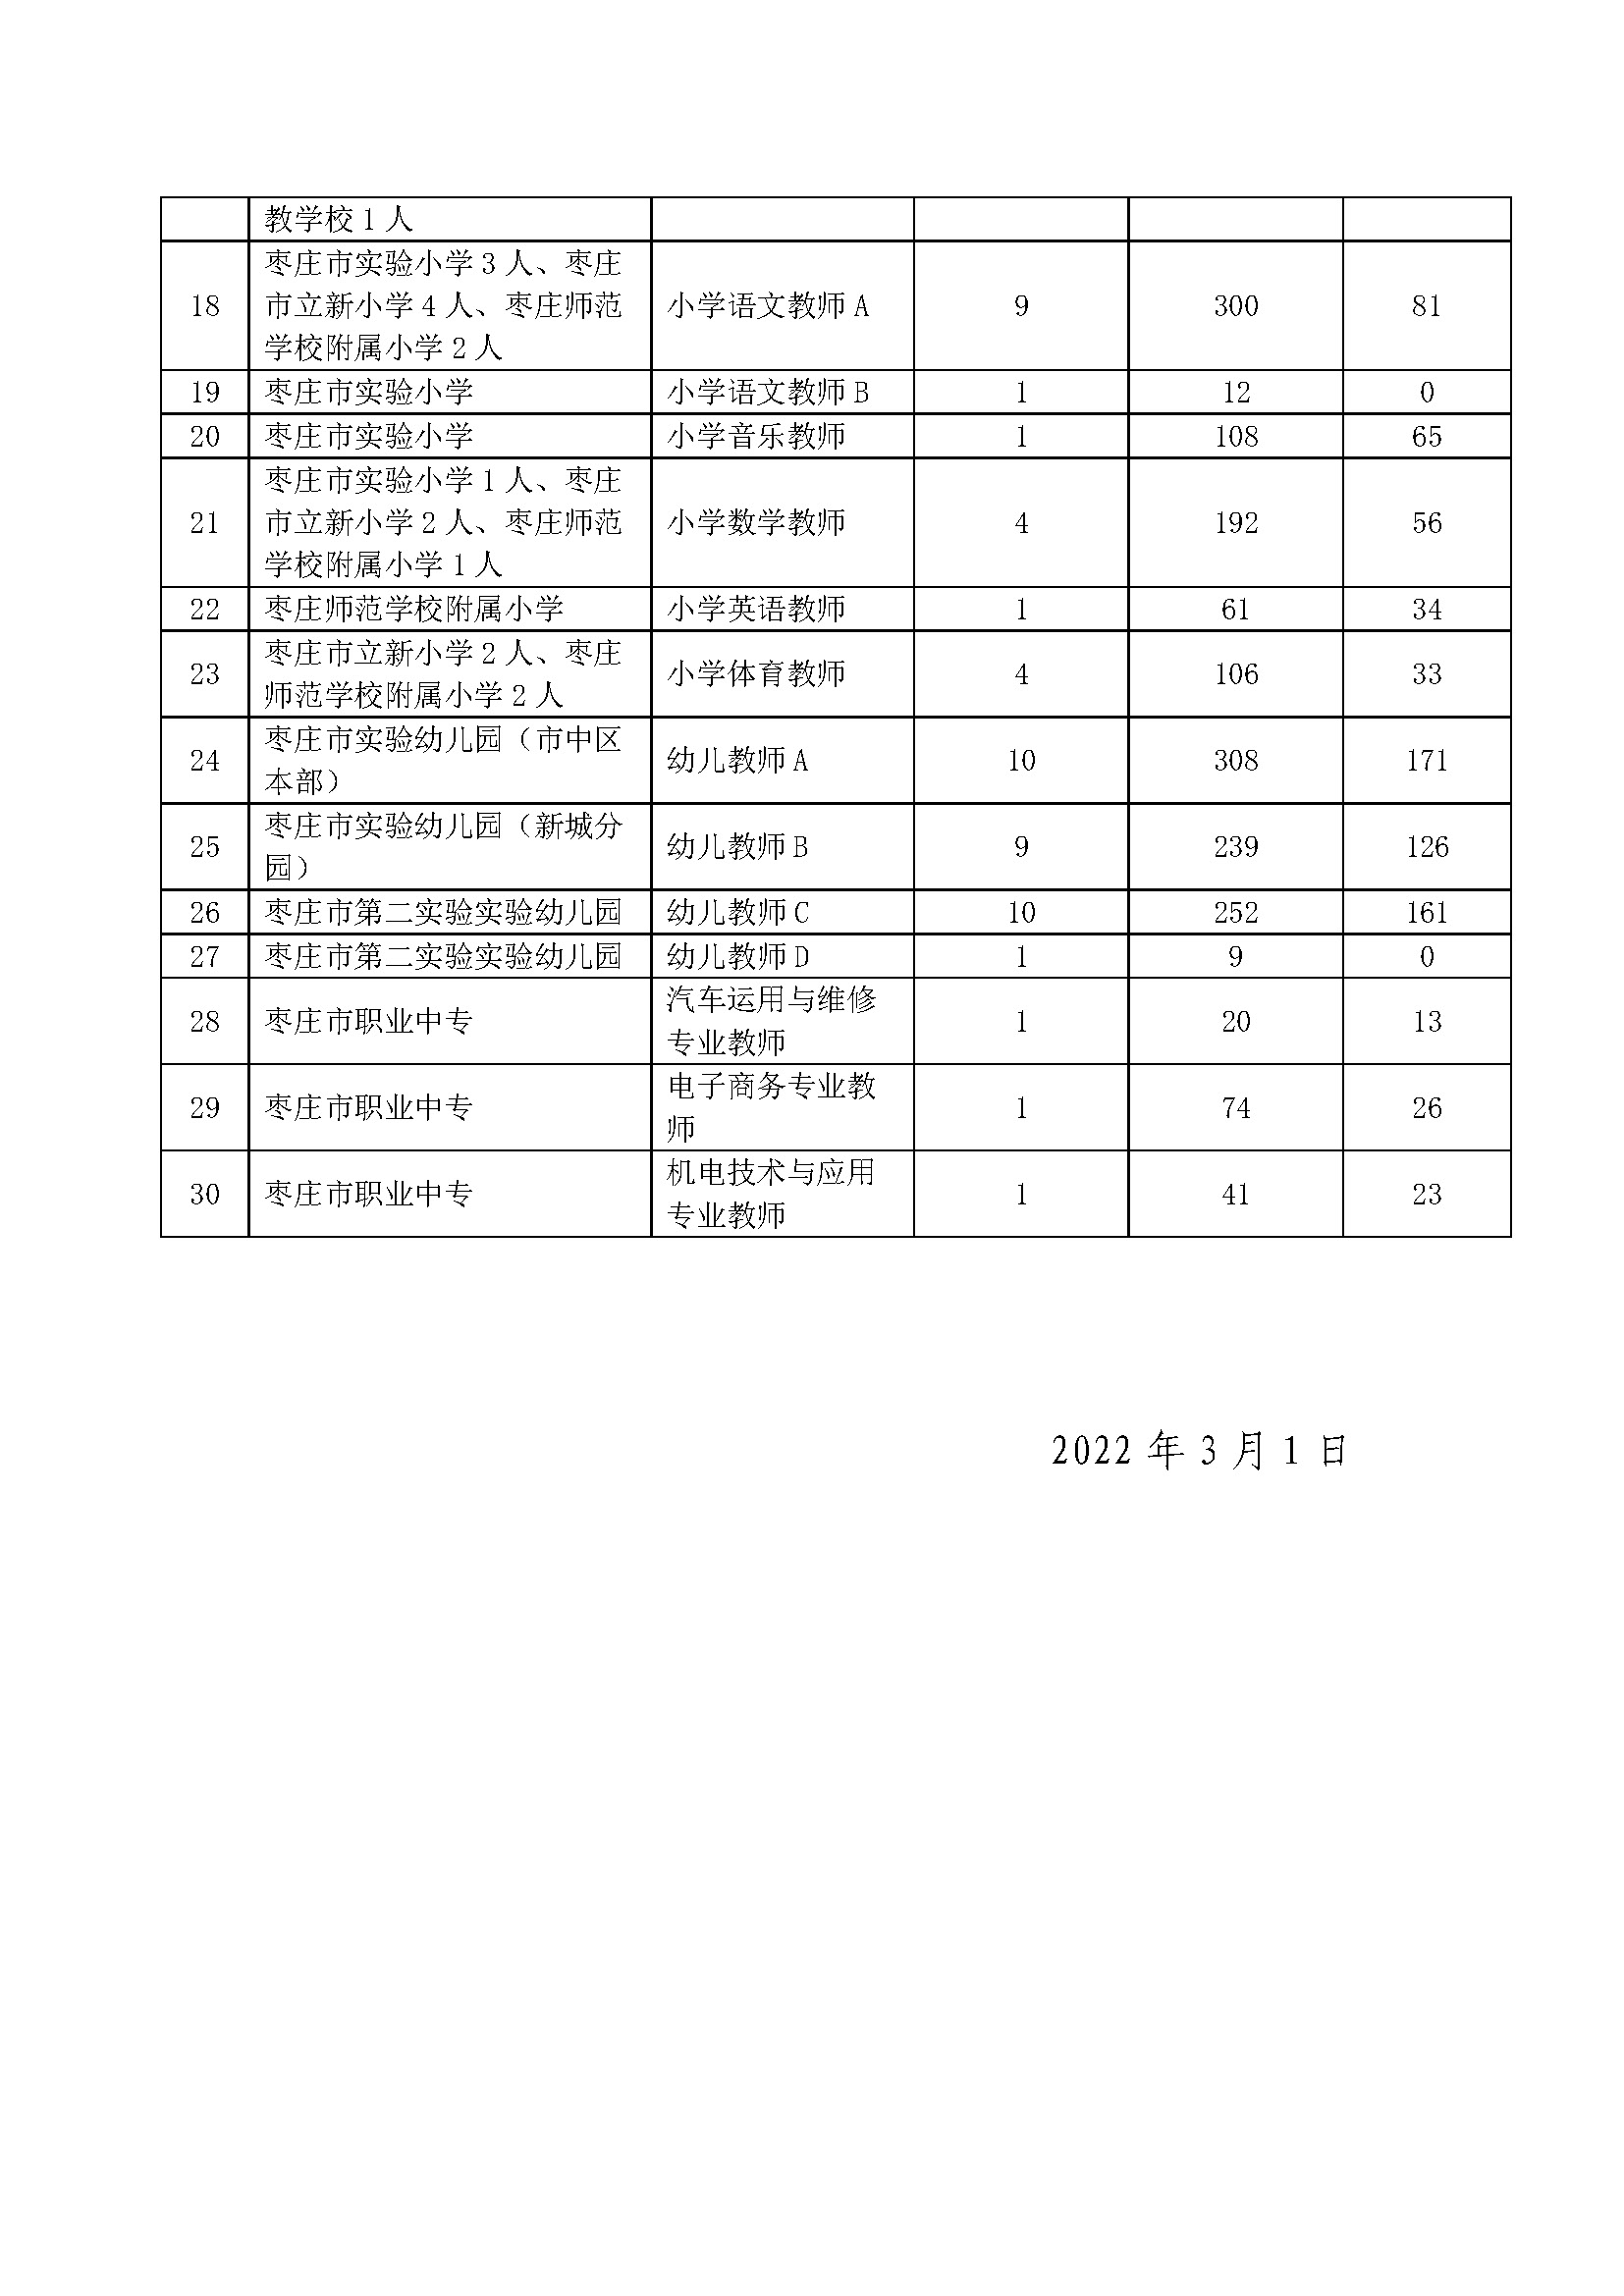 2022年枣庄市教育局直属学校公开招聘教师报名情况发布_页面_2.jpg